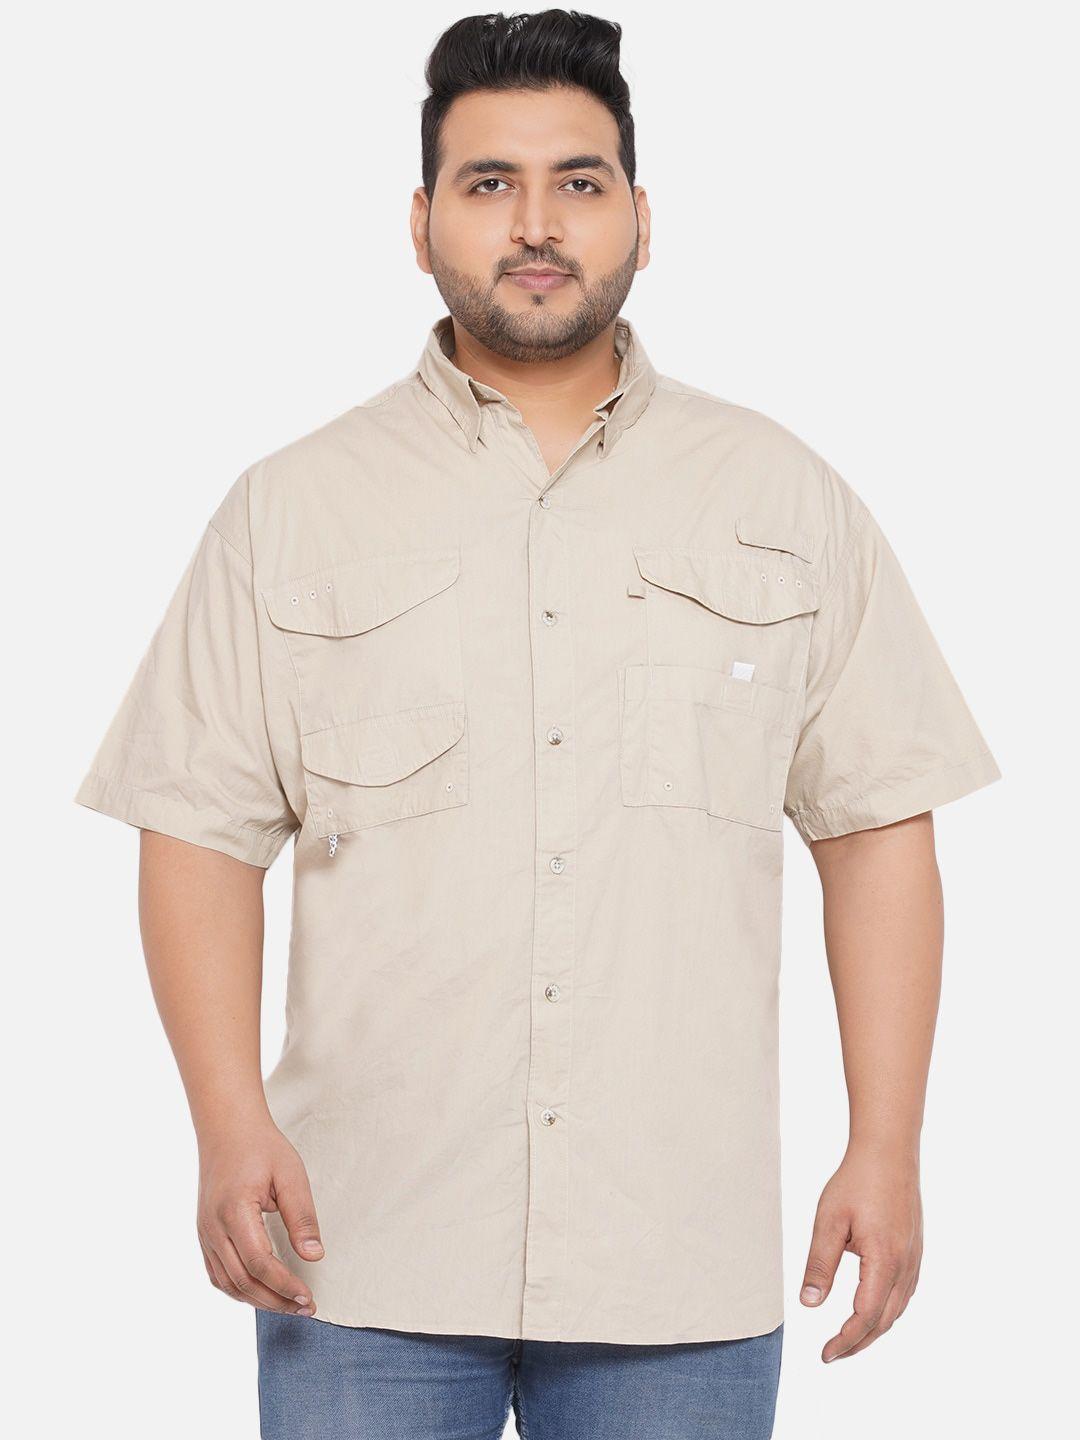 santonio men plus size solid cotton casual shirt